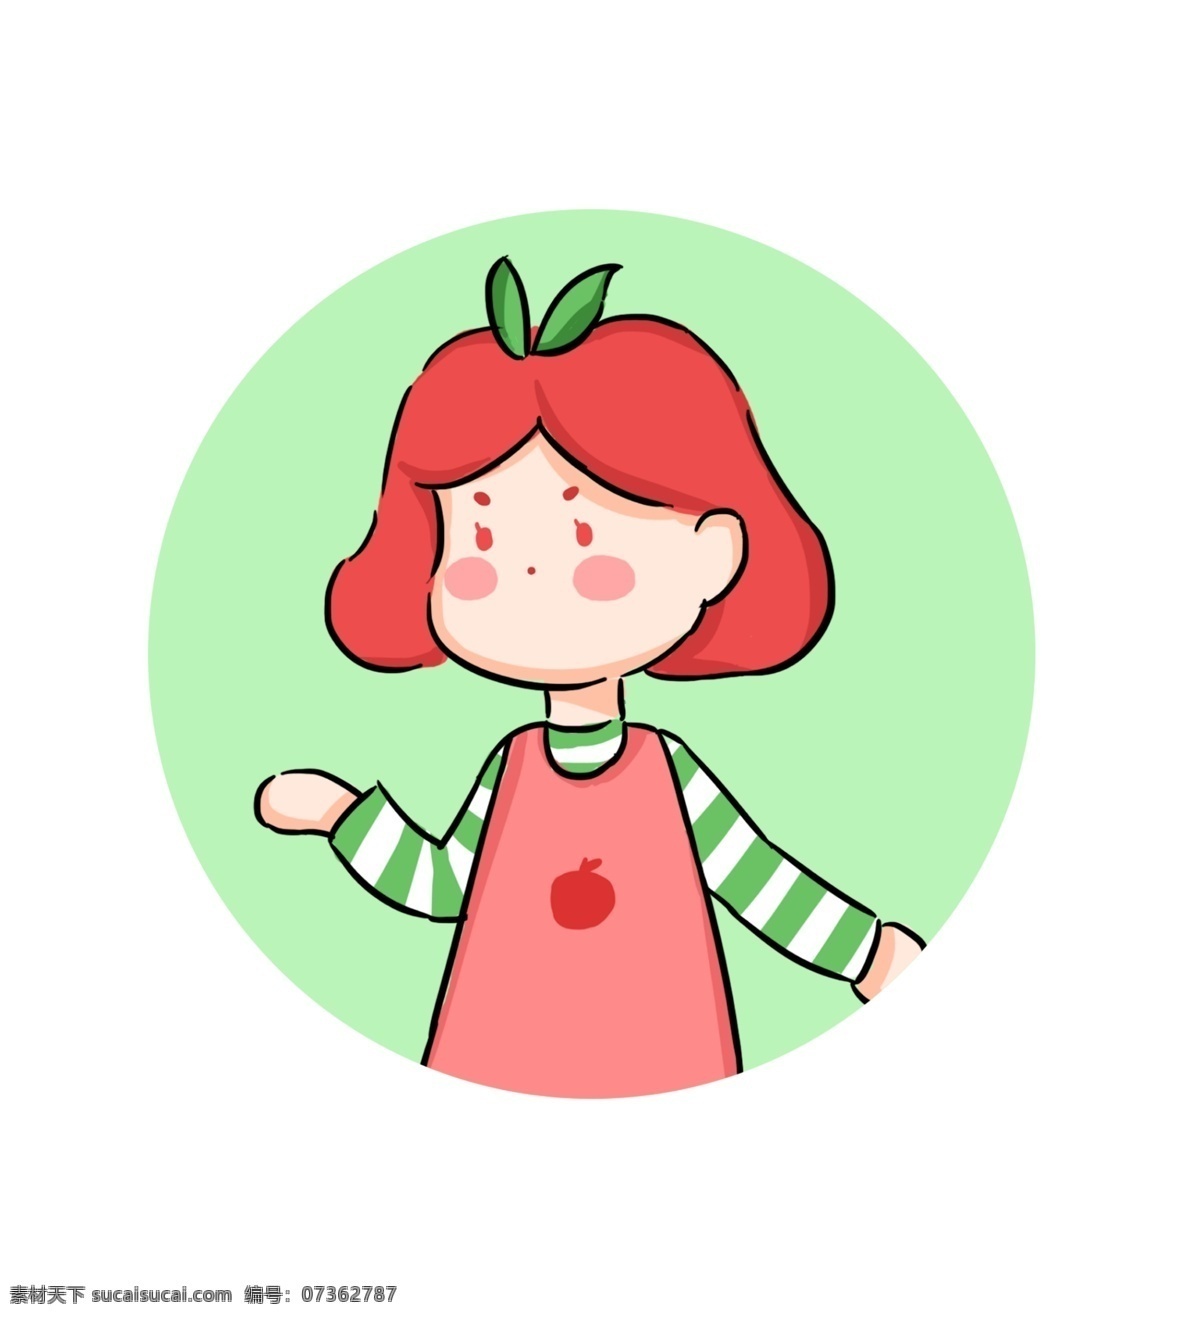 夏日 苹果 女孩 拟人 水果 卡通 创意 头像 插画